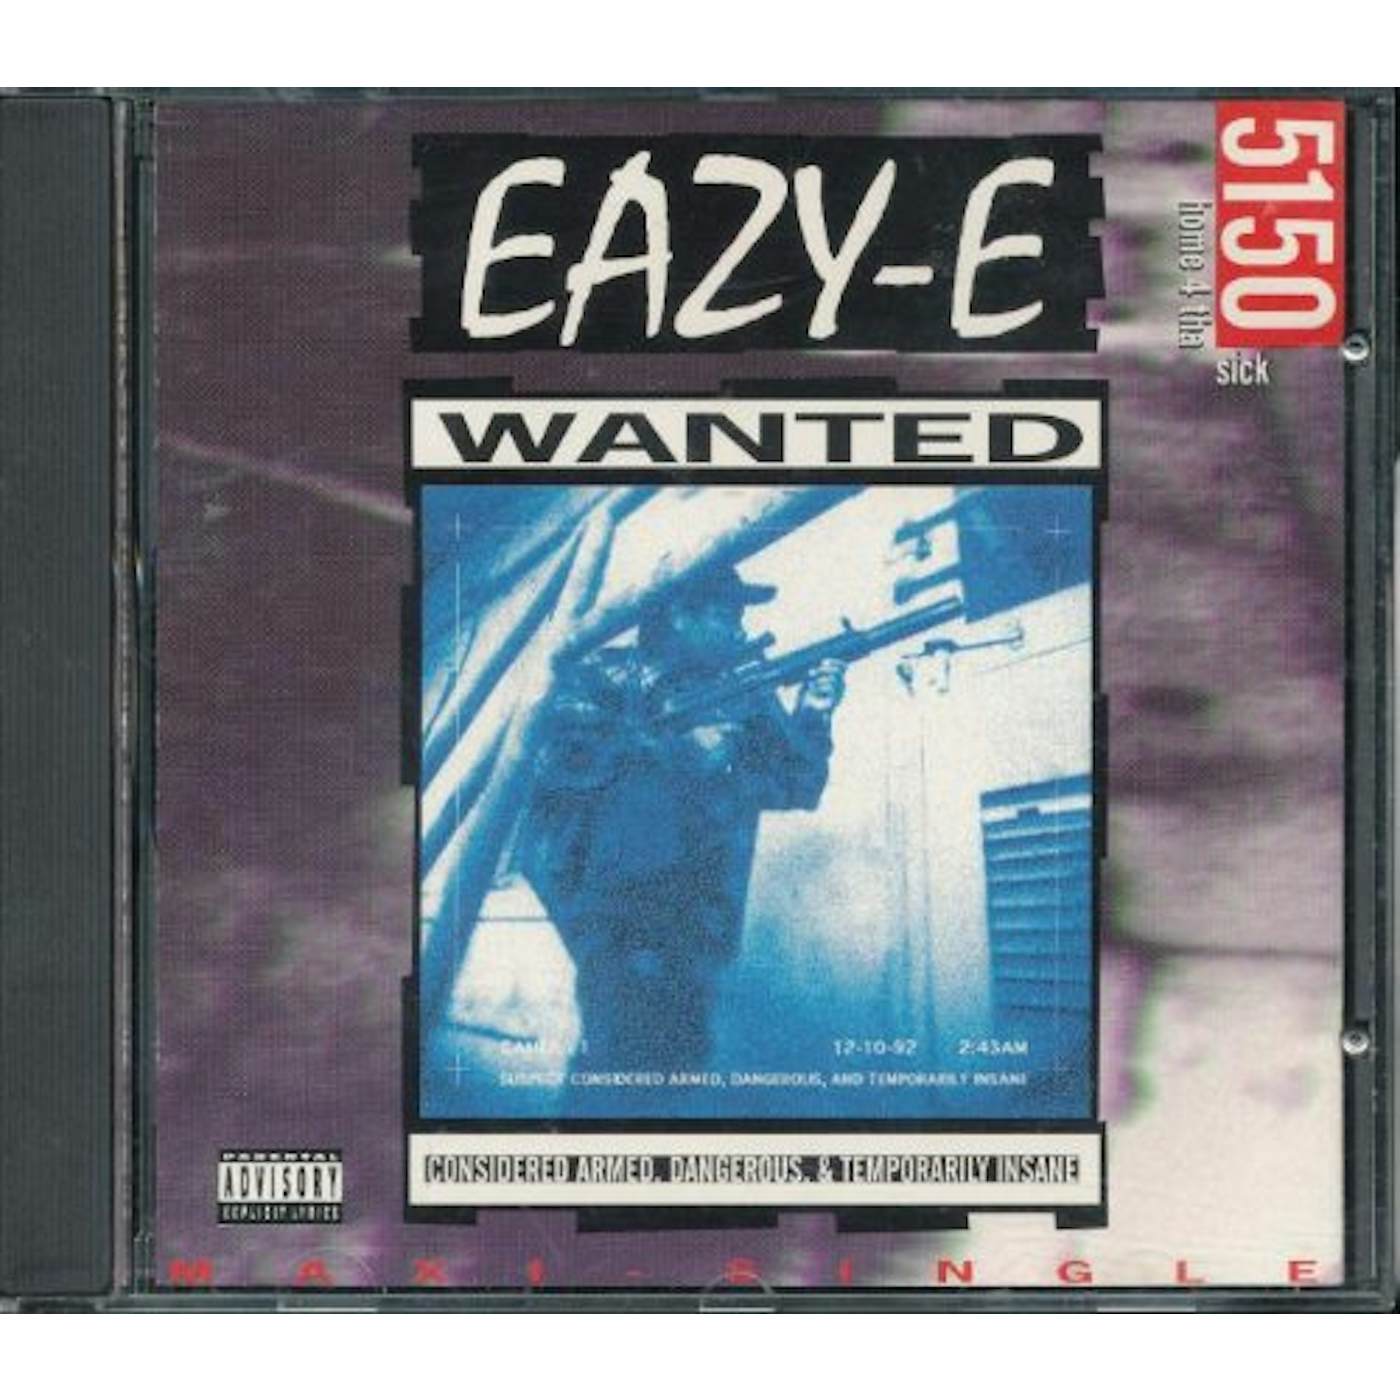 Eazy-E 5150 HOME 4 THA SICK CD